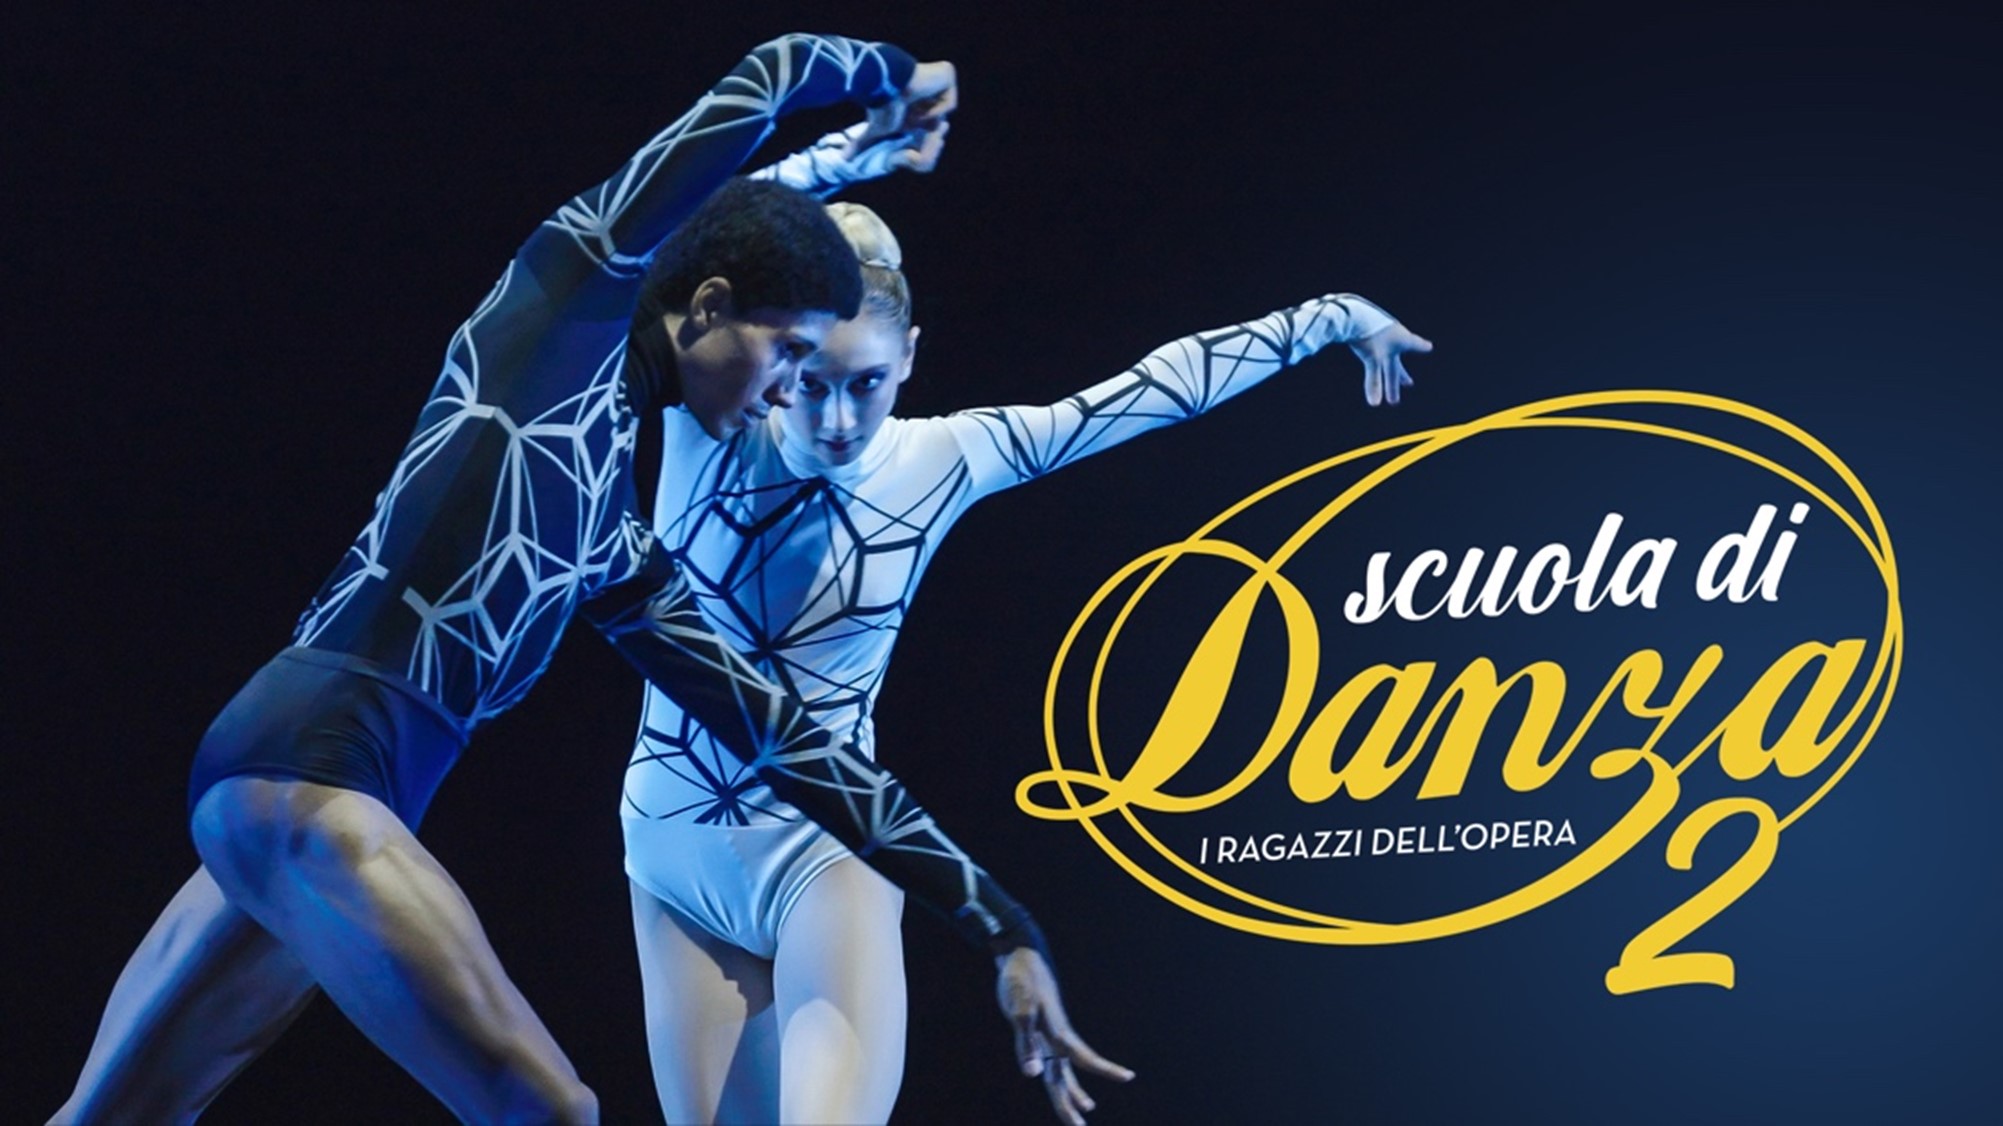 Scuola di Danza 2 - logo wide